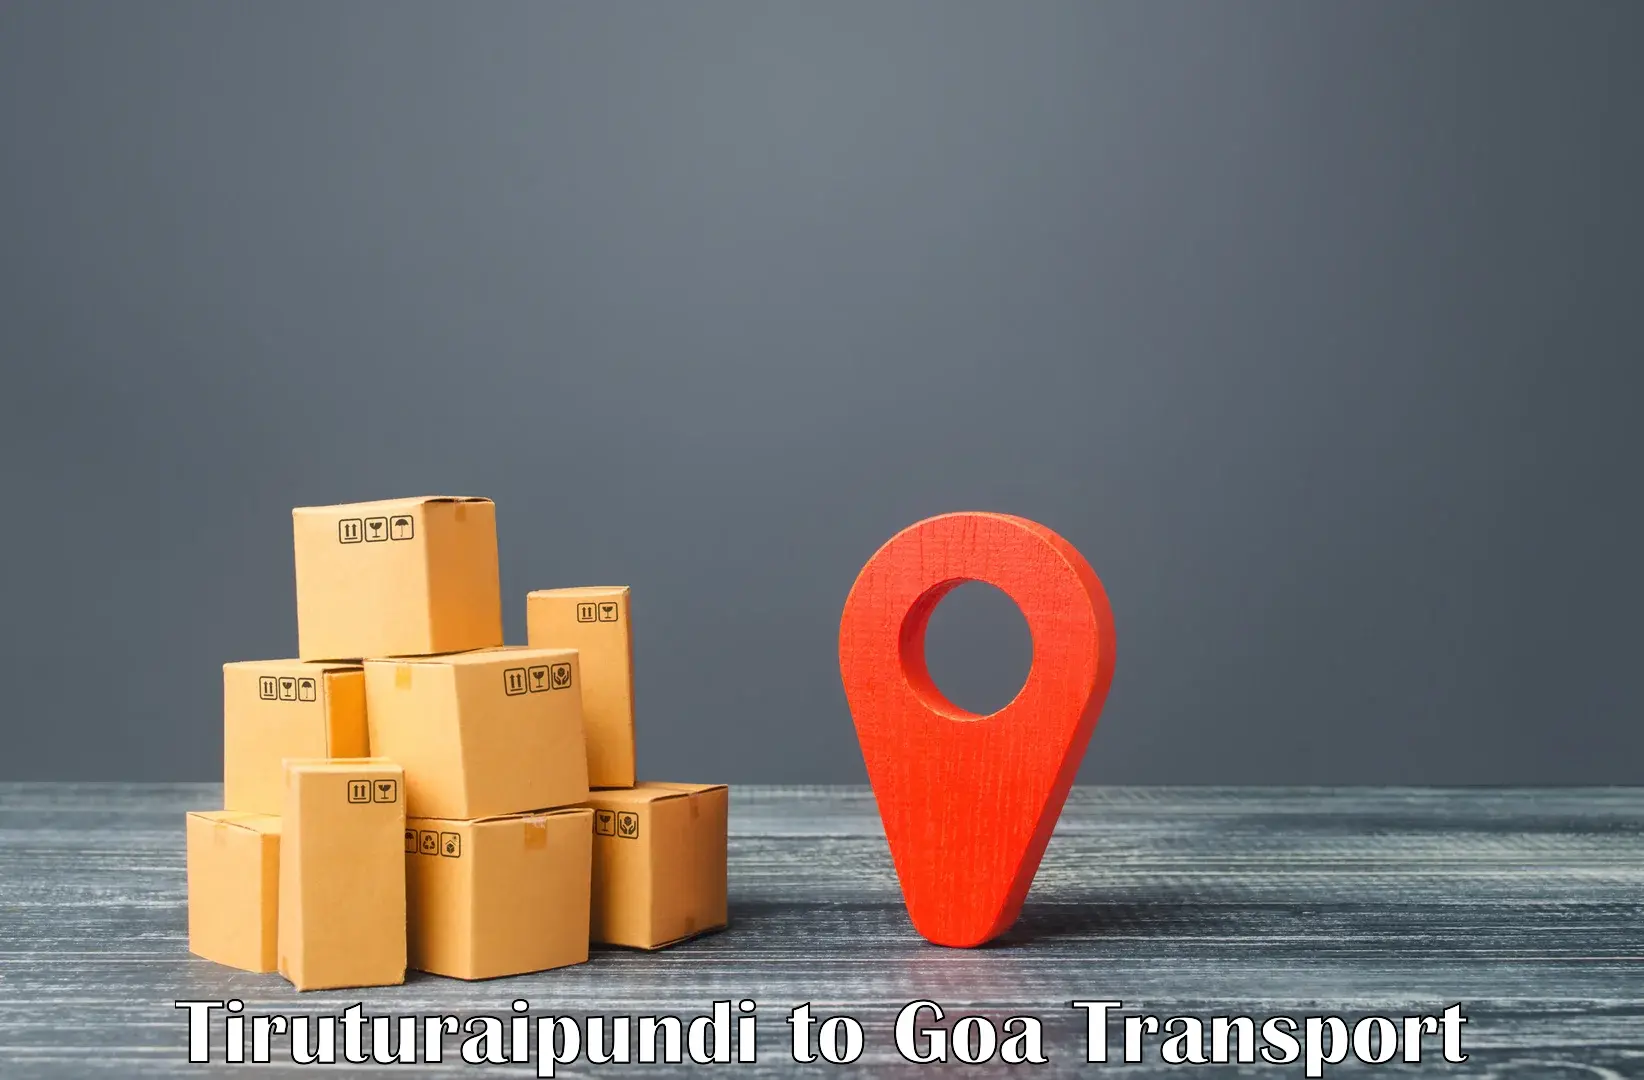 Vehicle transport services Tiruturaipundi to Ponda